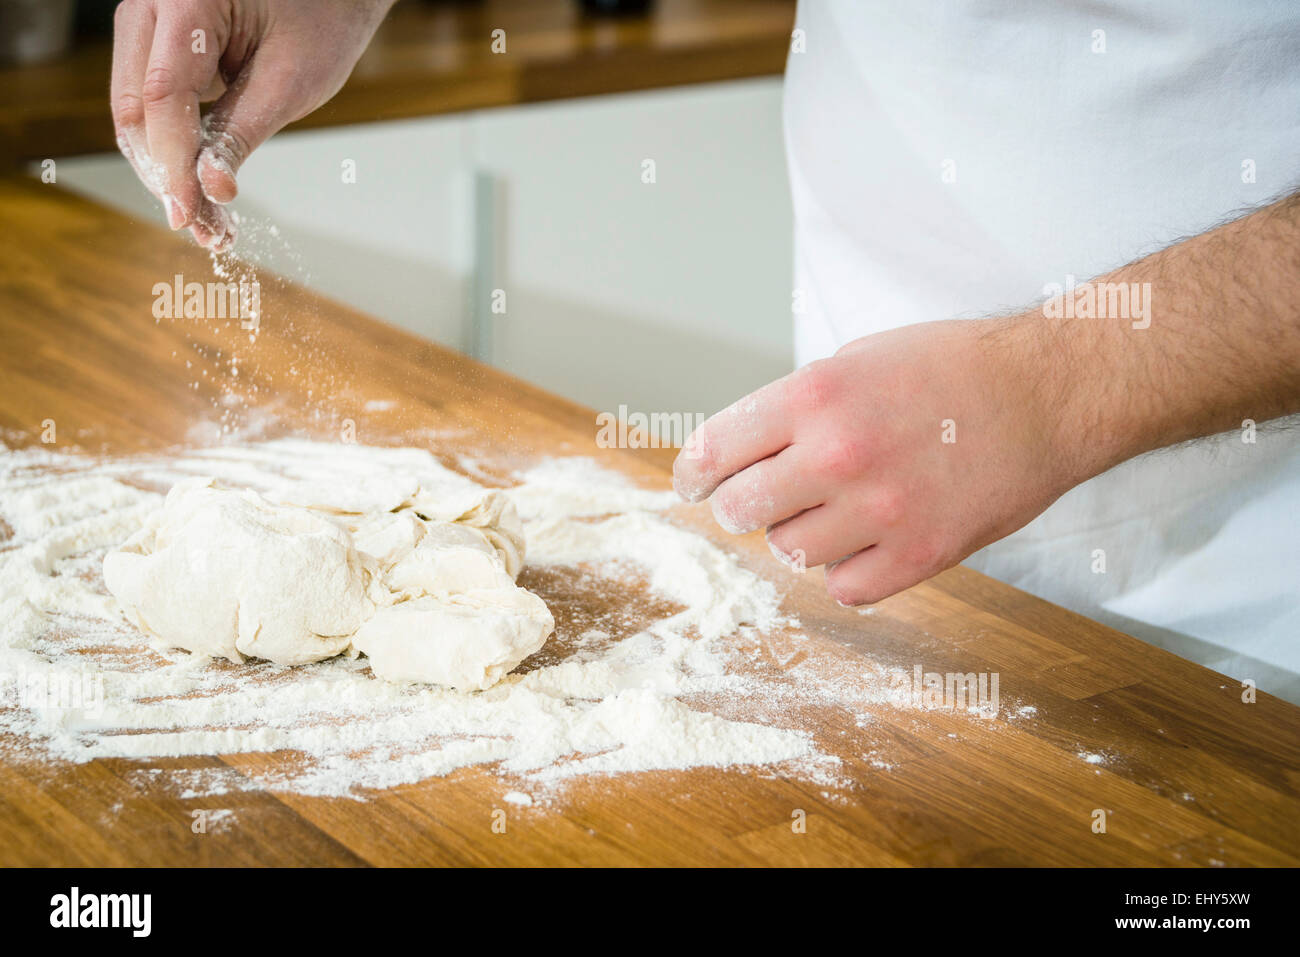 Person preparing fresh bread Stock Photo